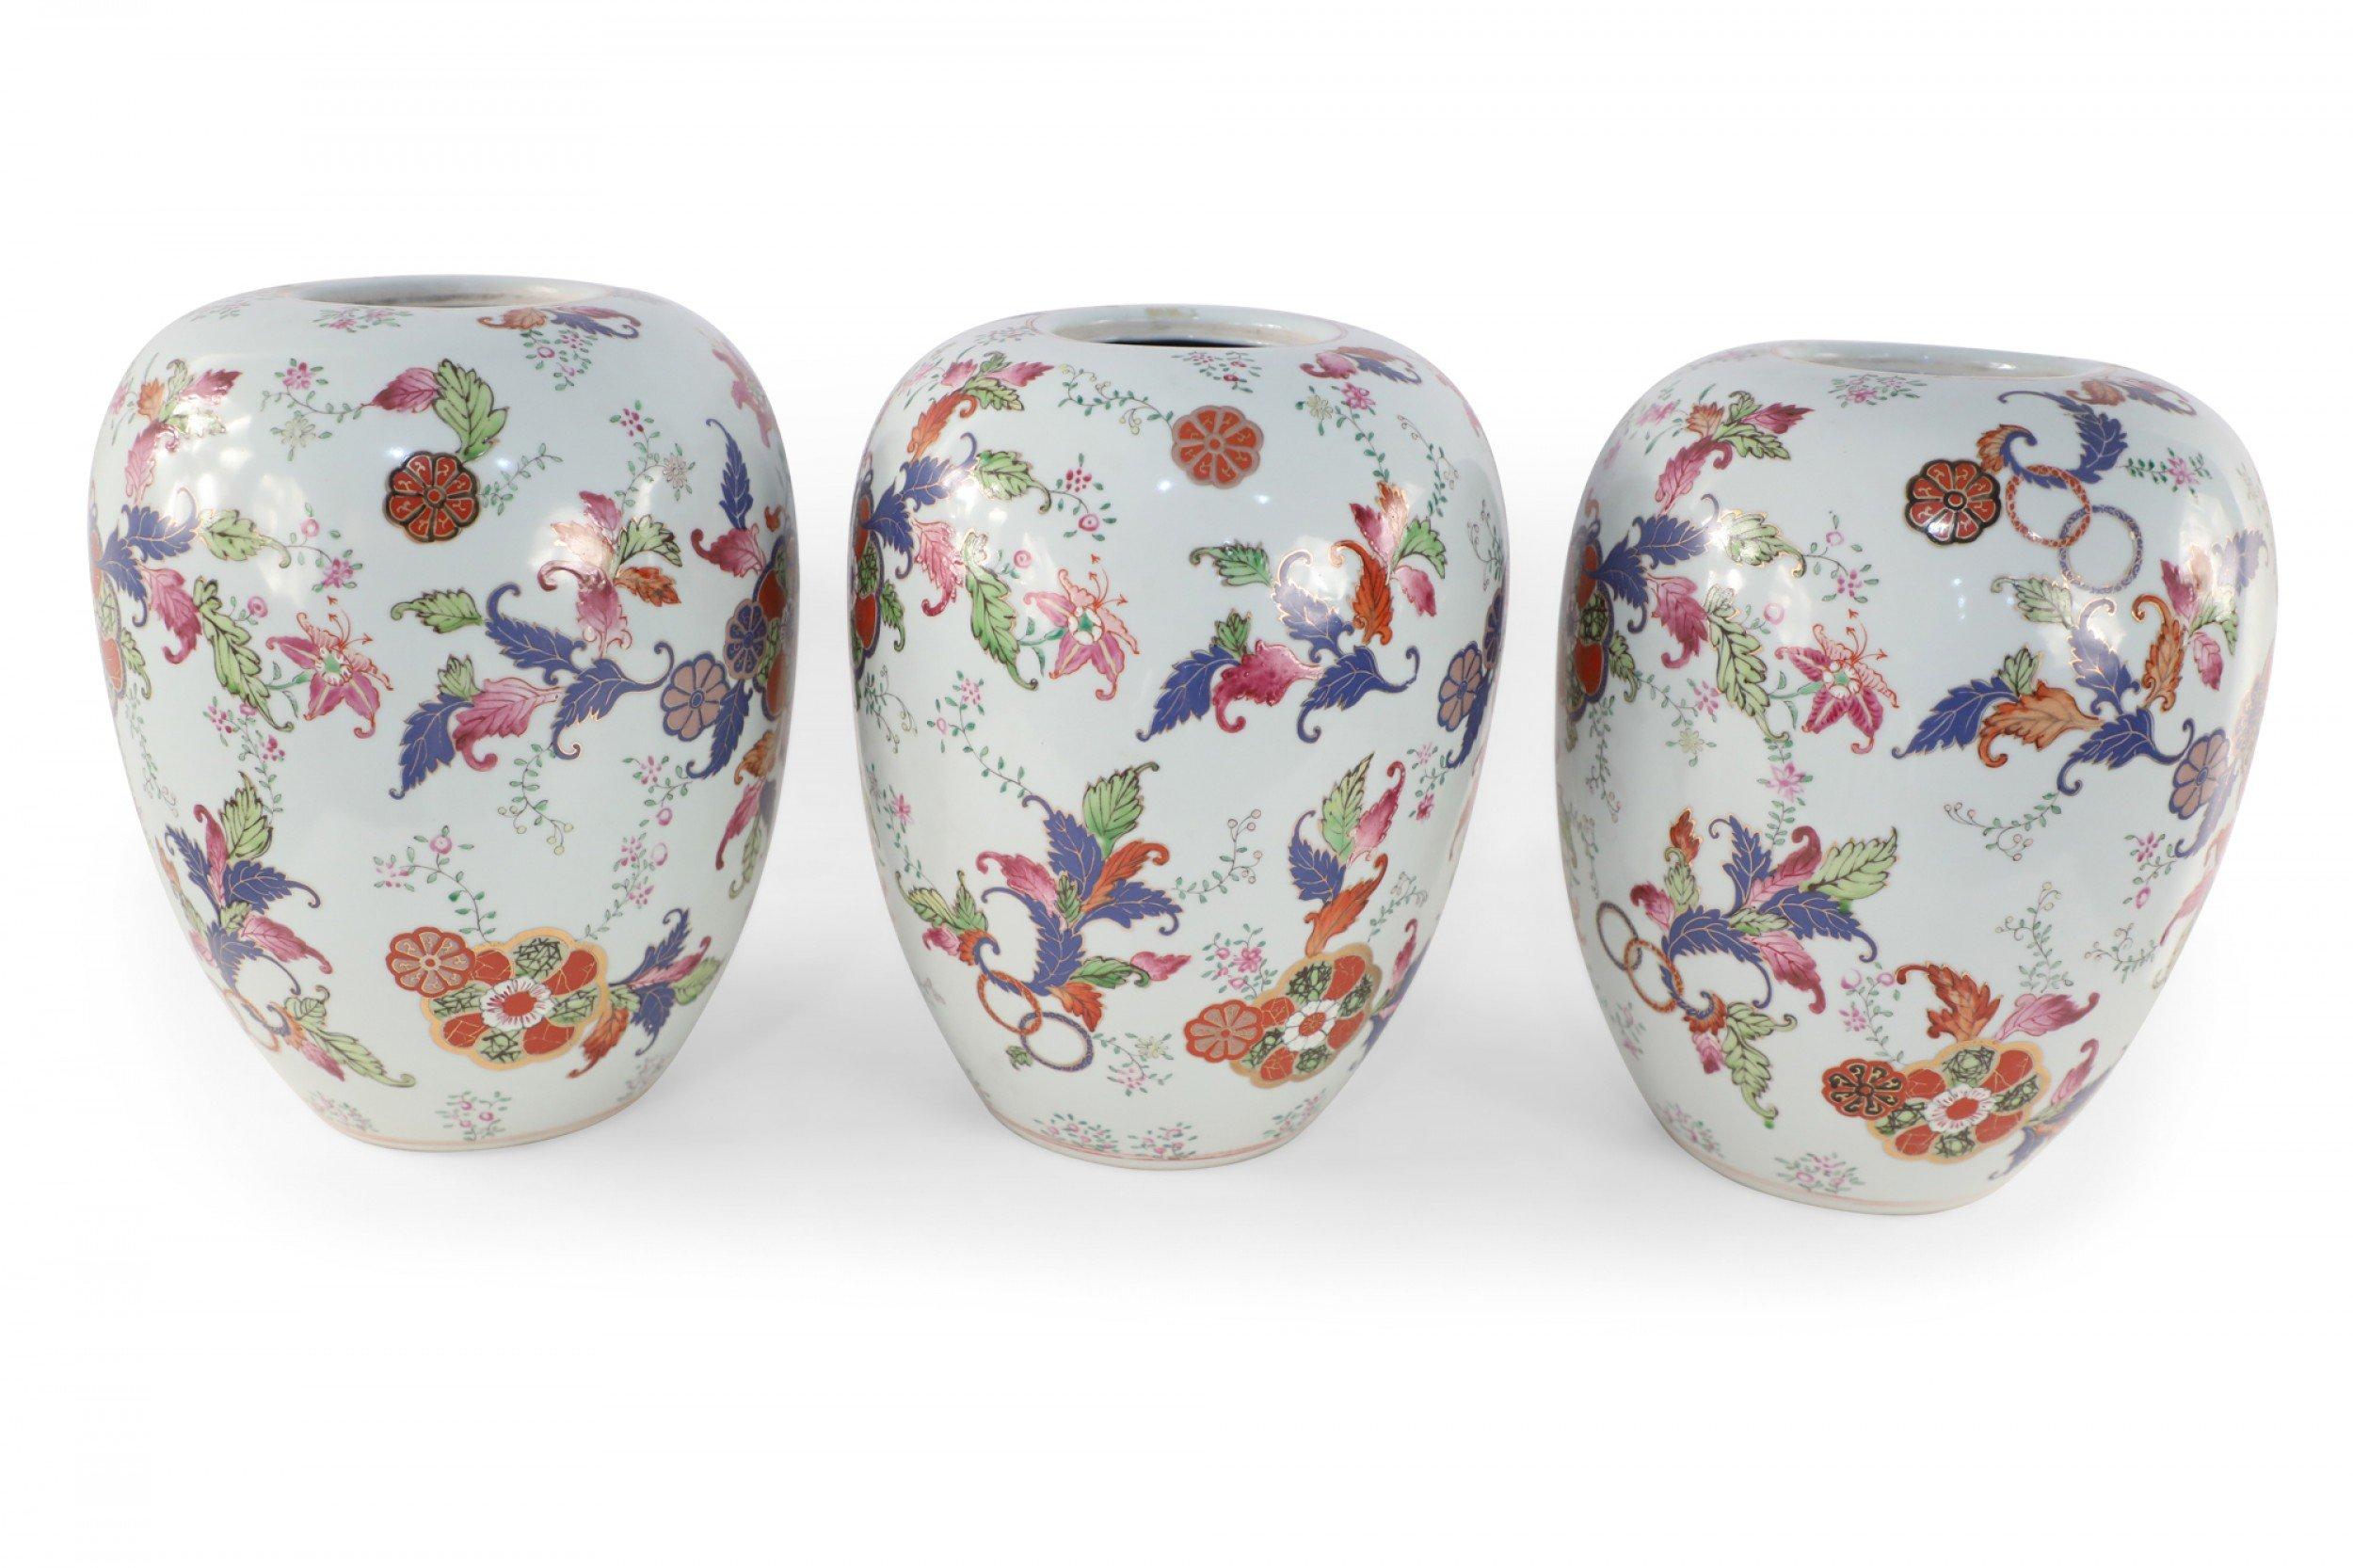 5 jarres chinoises en porcelaine blanche à bec ouvert, décorées d'un motif de fleurs et de feuillages en violet, orange et vert, rehaussé de fleurs de lotus en or (Prix unitaire).
 